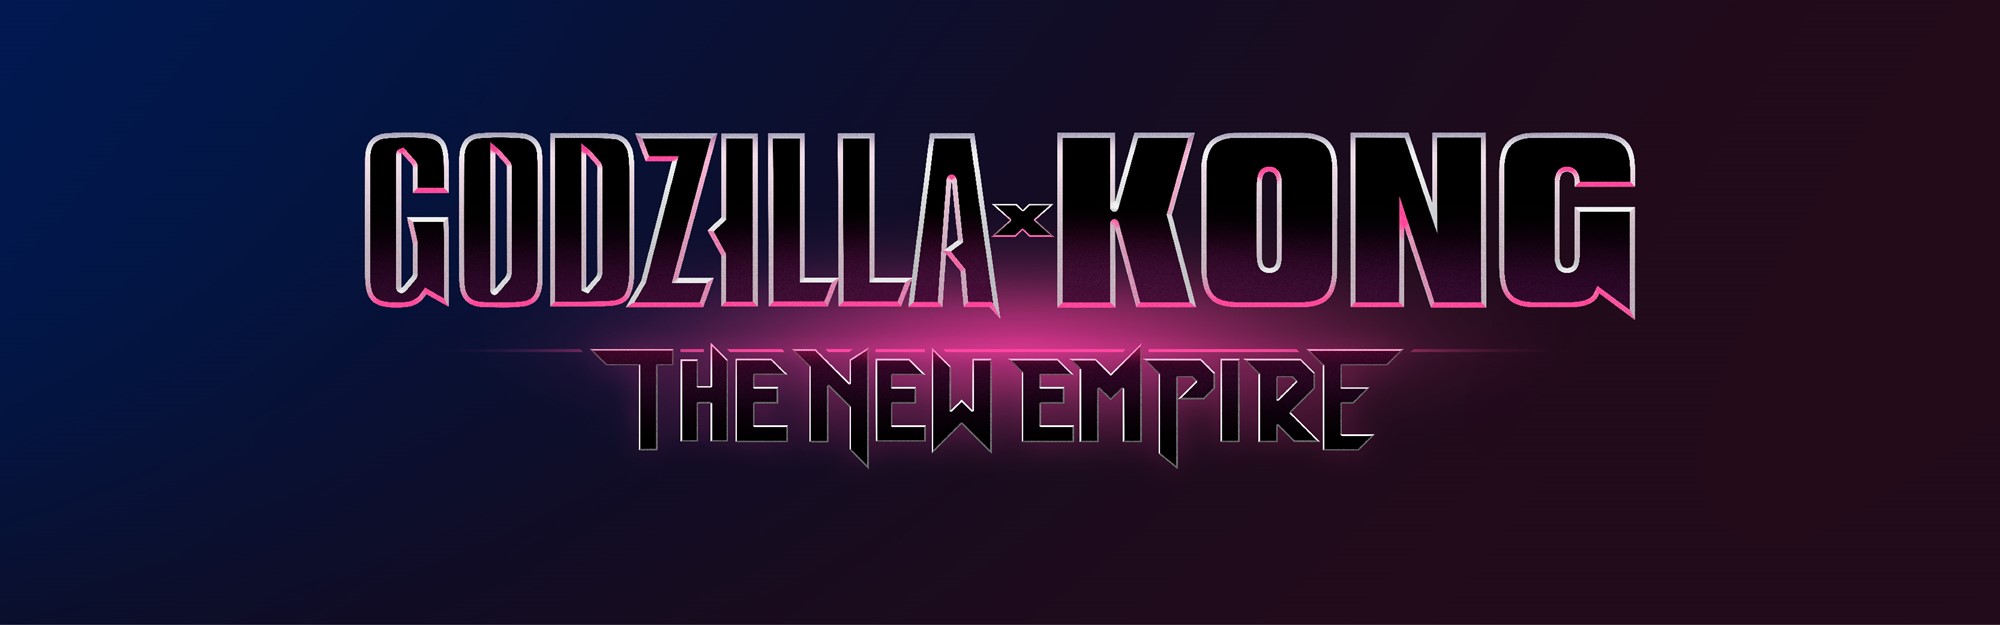 GODZILLA X KONG: THE NEW EMPIRE